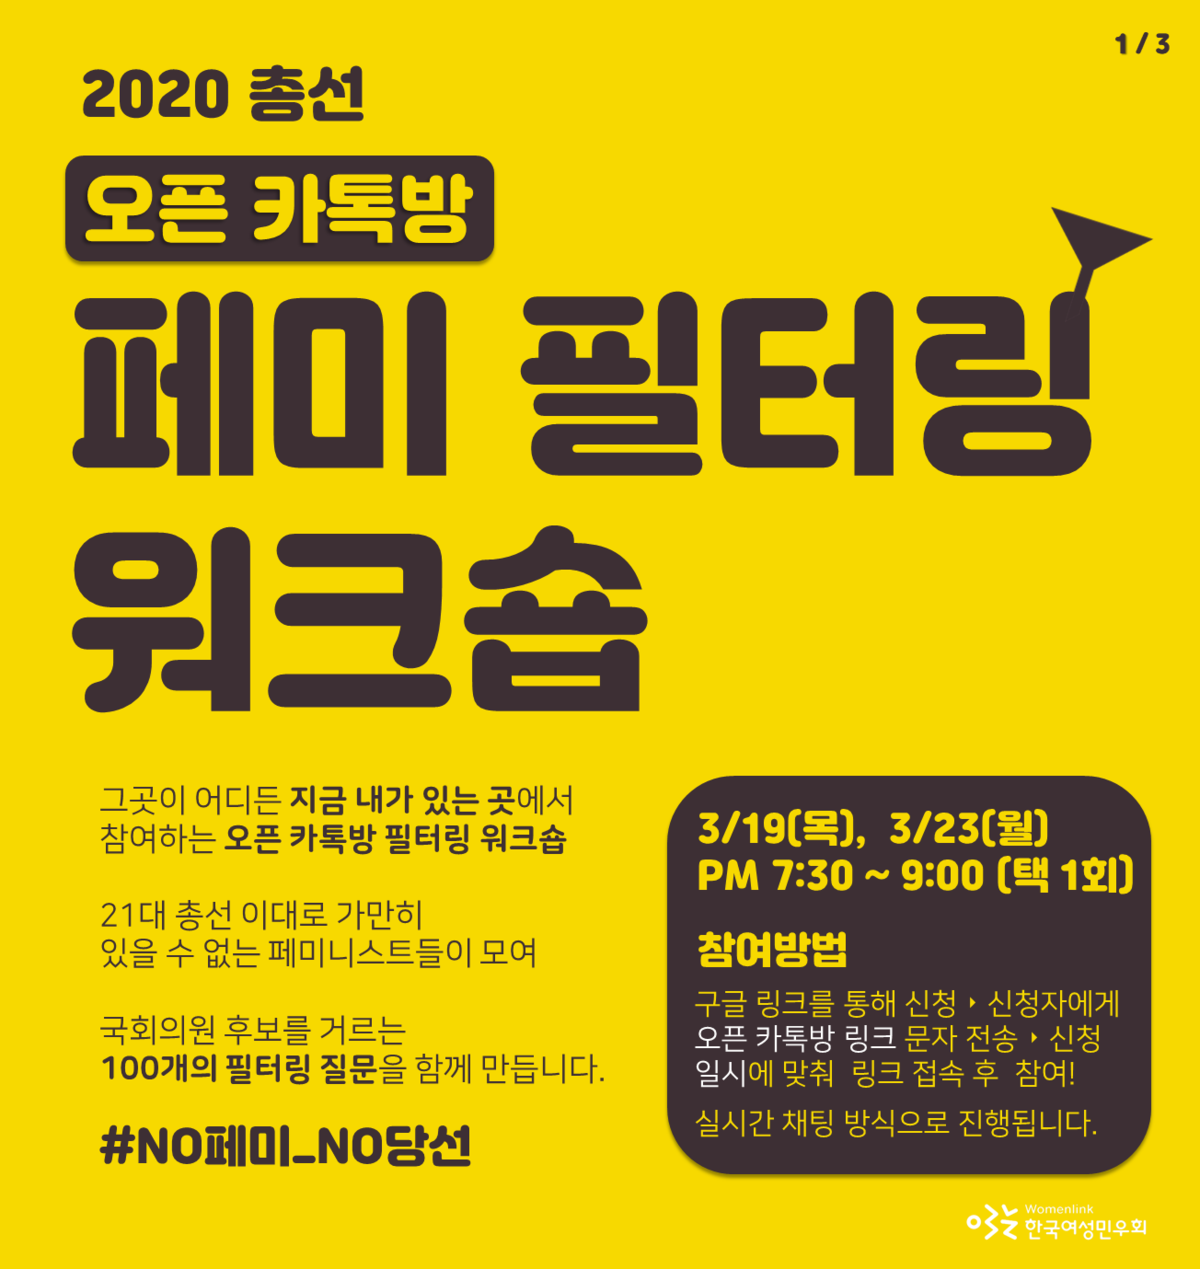 [한국여성민우회] 지금 내가 있는 곳에서 참여하는 워크숍 참가 신청 안내 | 서울시성평등활동지원센터